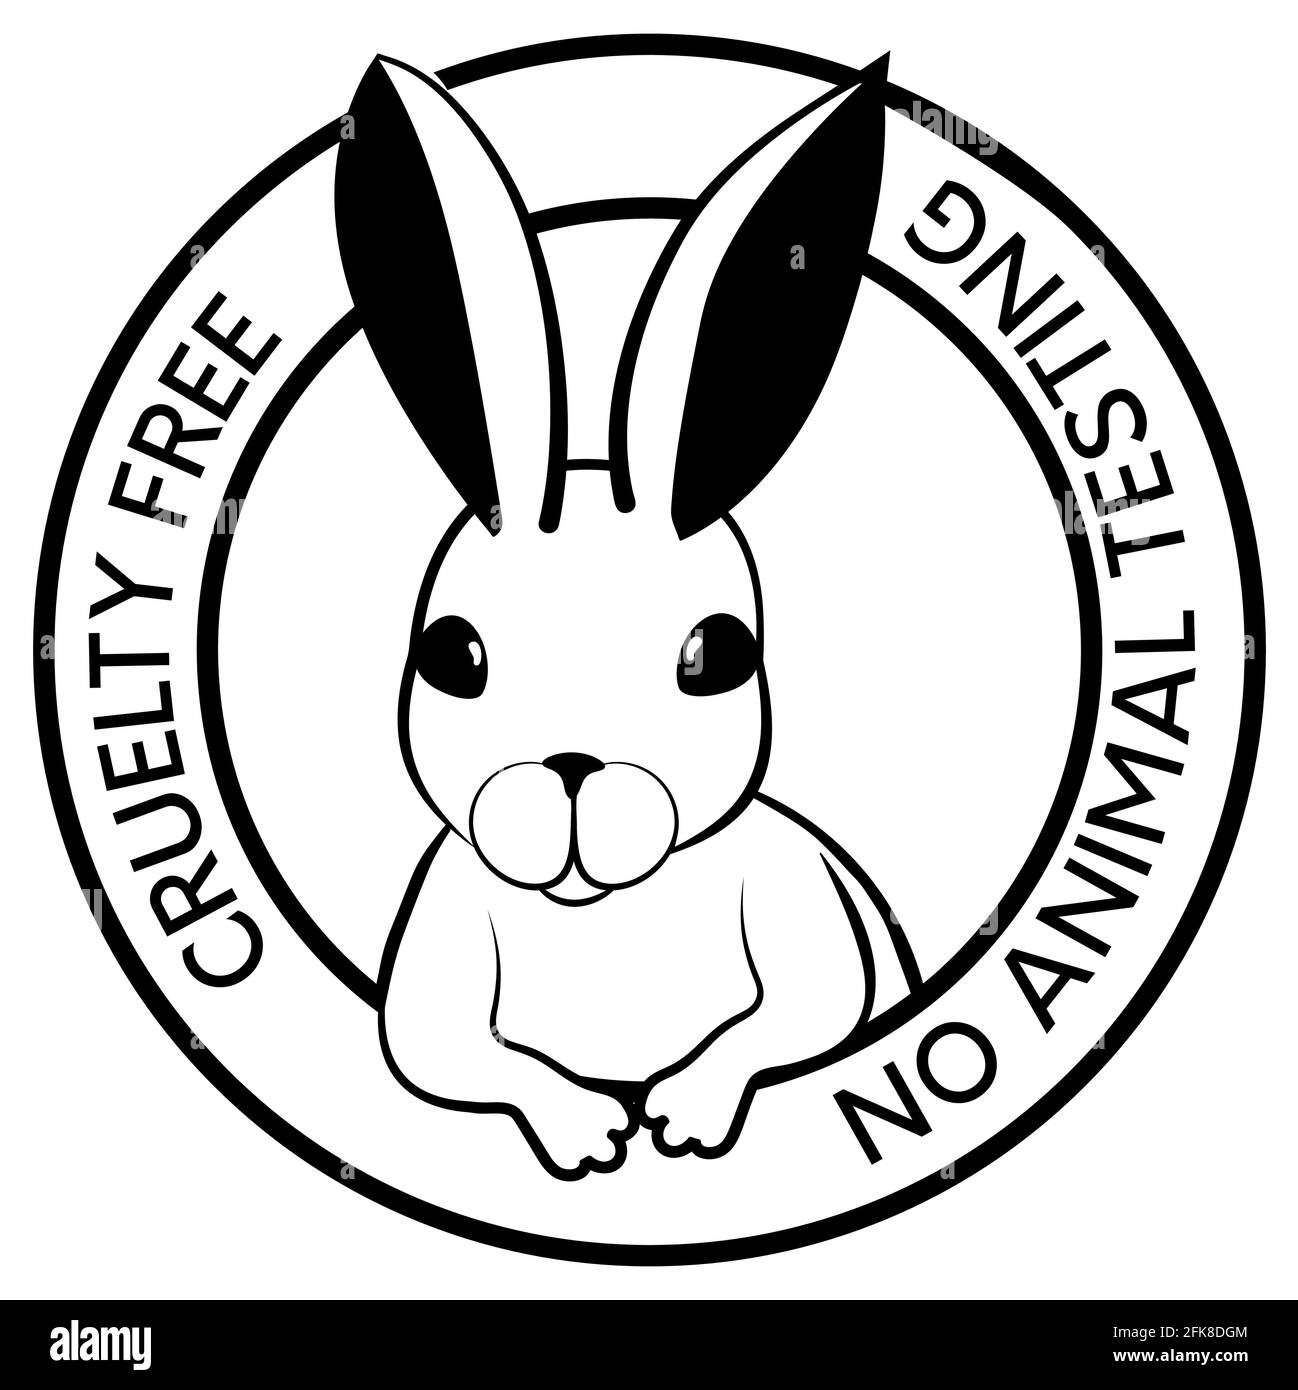 Grausame Konzept schwarz monochromes Design mit Kaninchen-Symbol. Nicht an Tieren getestet Symbol. Vektorgrafik Stock Vektor